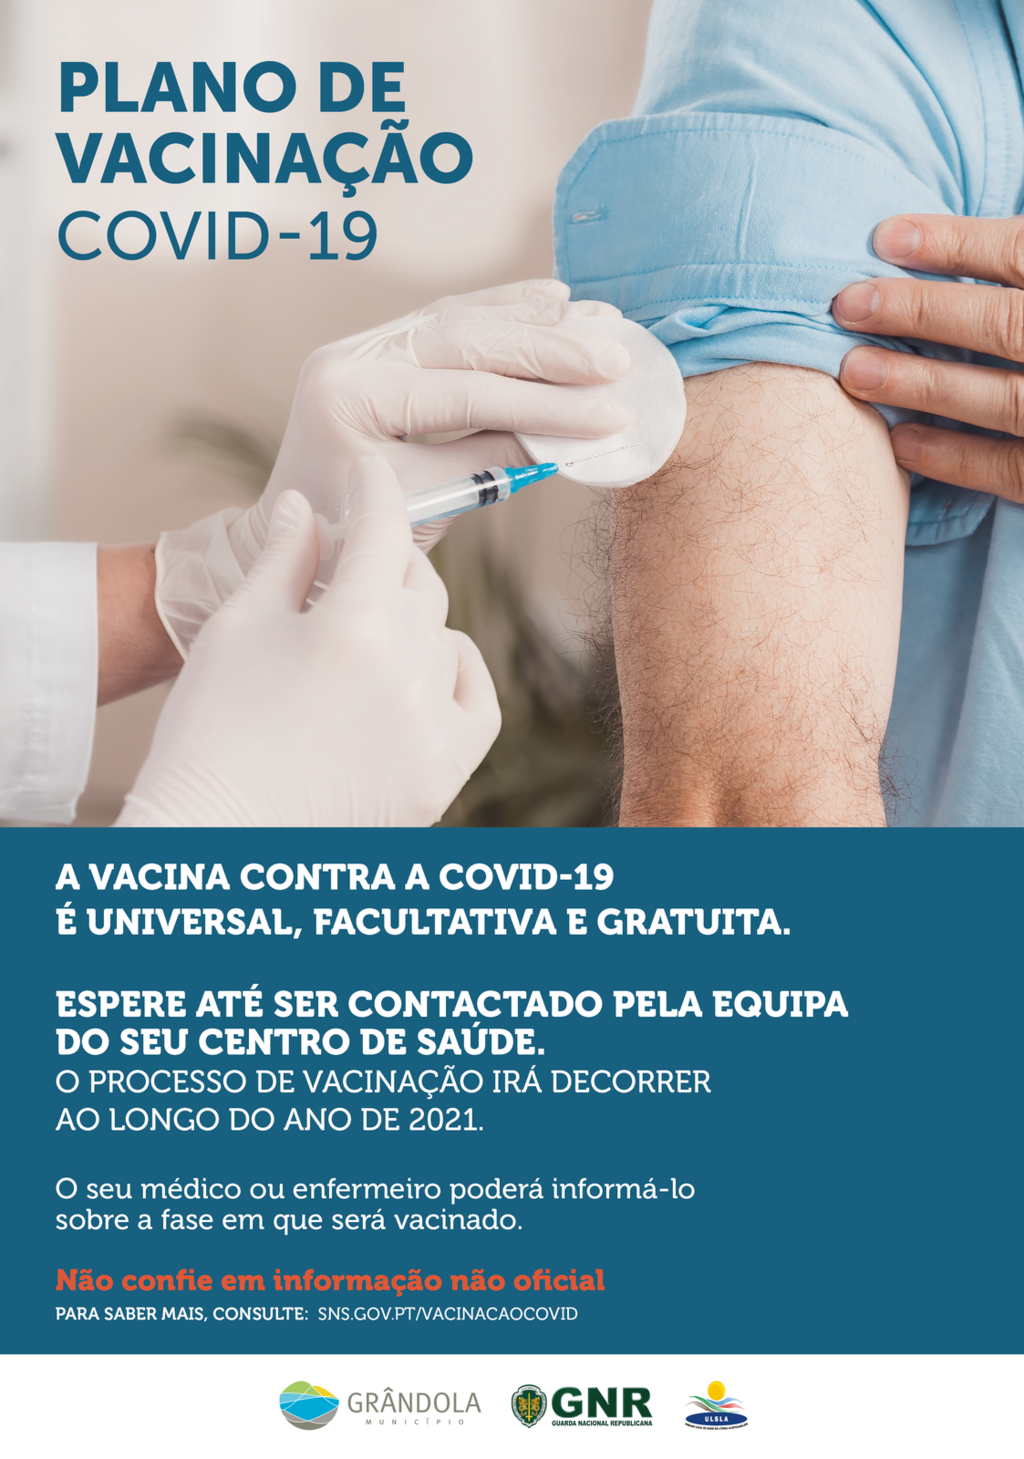 COVID-19  | Plano de Vacinação - Informações úteis 